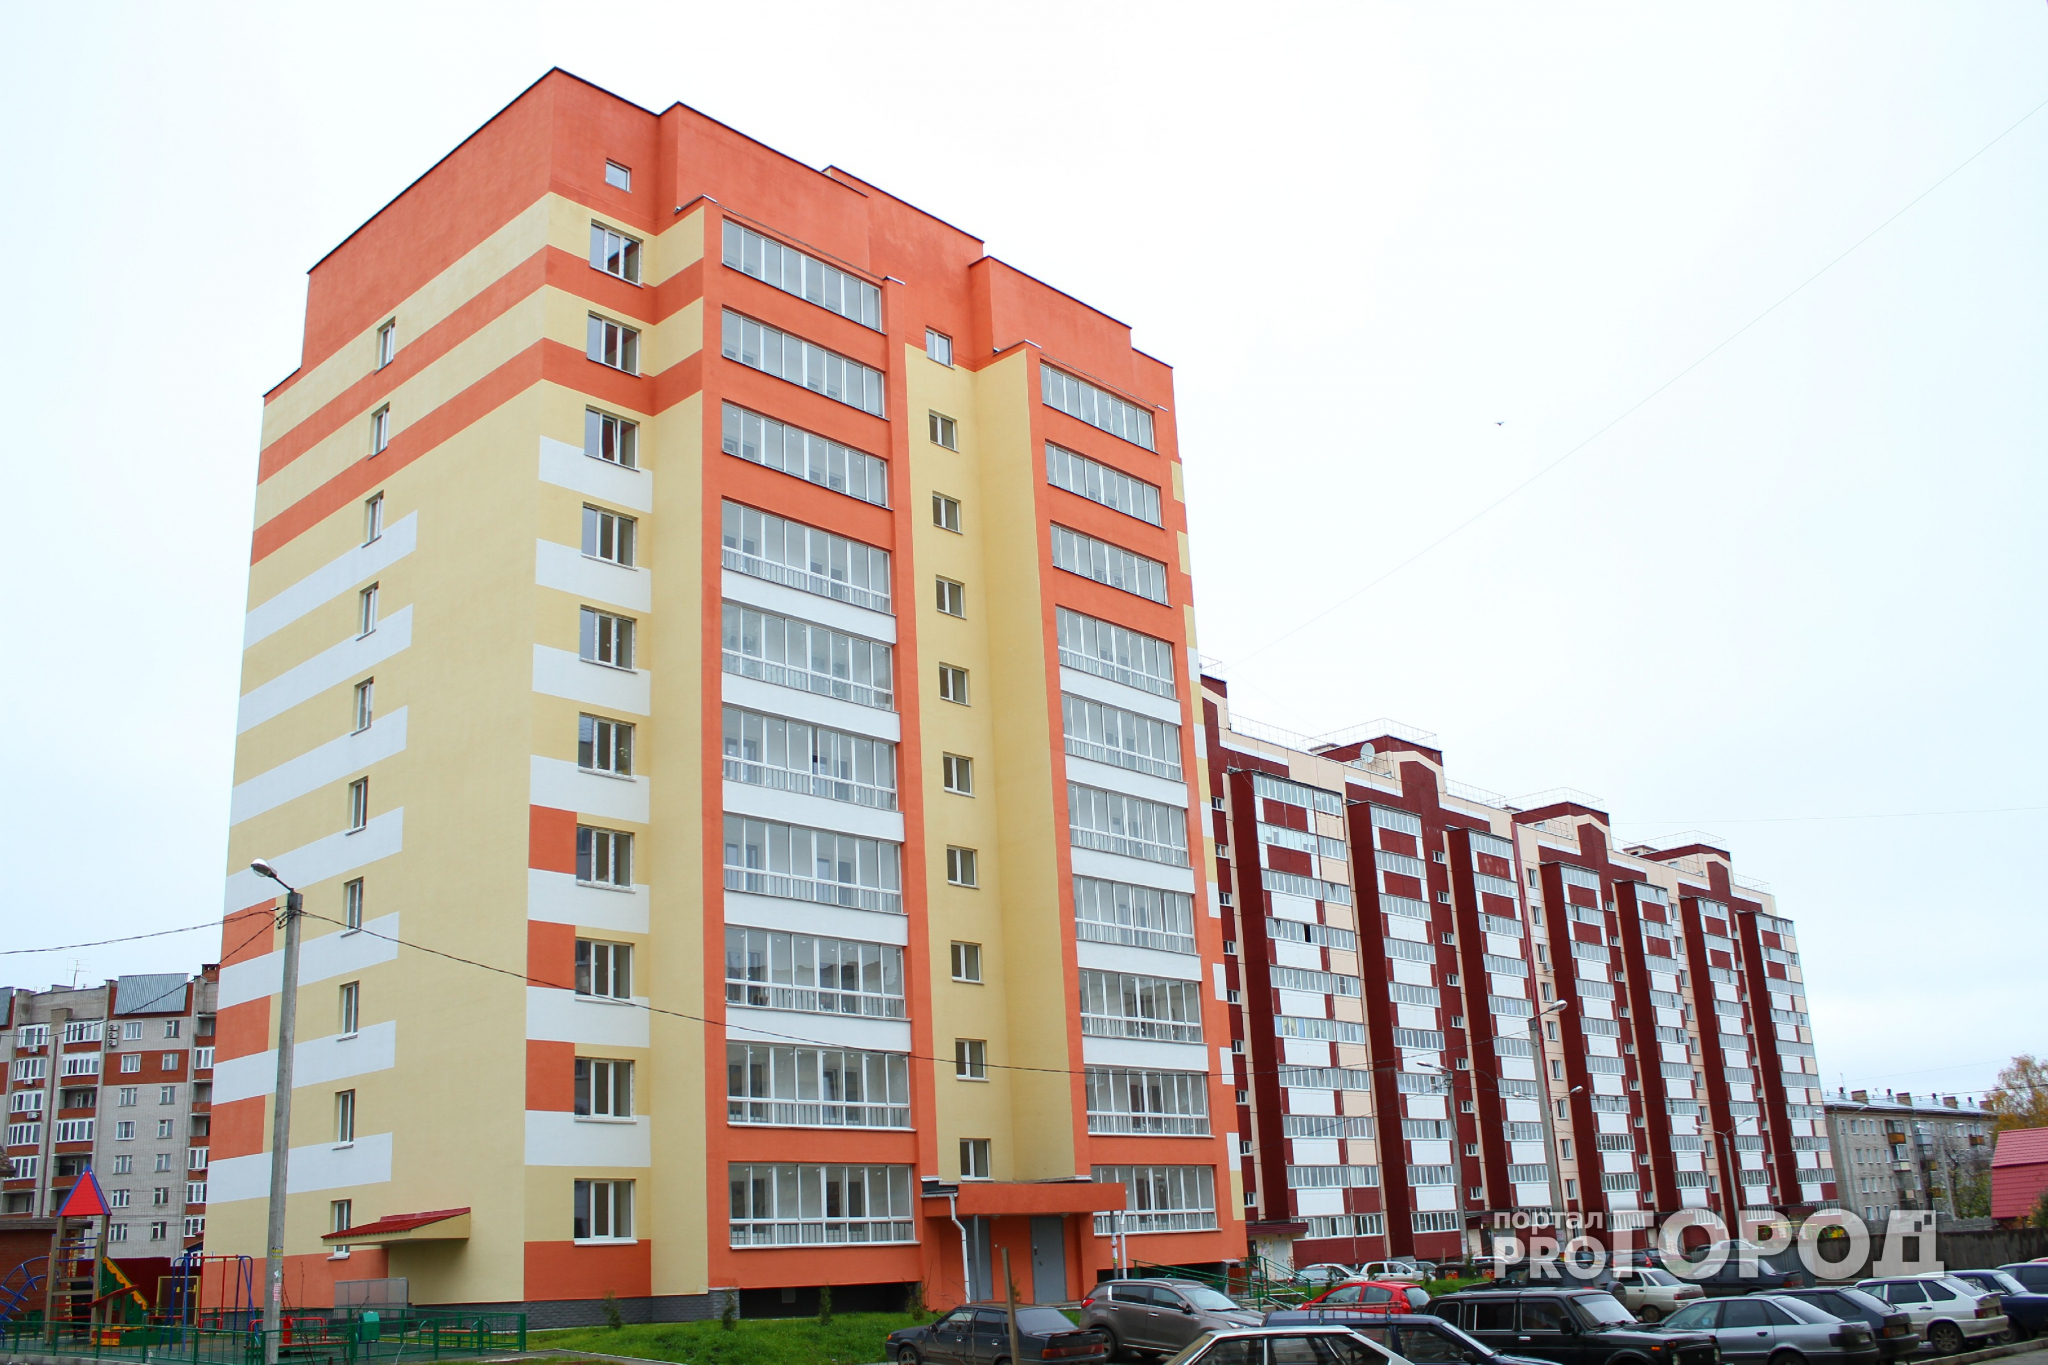 Самые высокие цены на жилье среди регионов ПФО отмечены в Нижегородской области